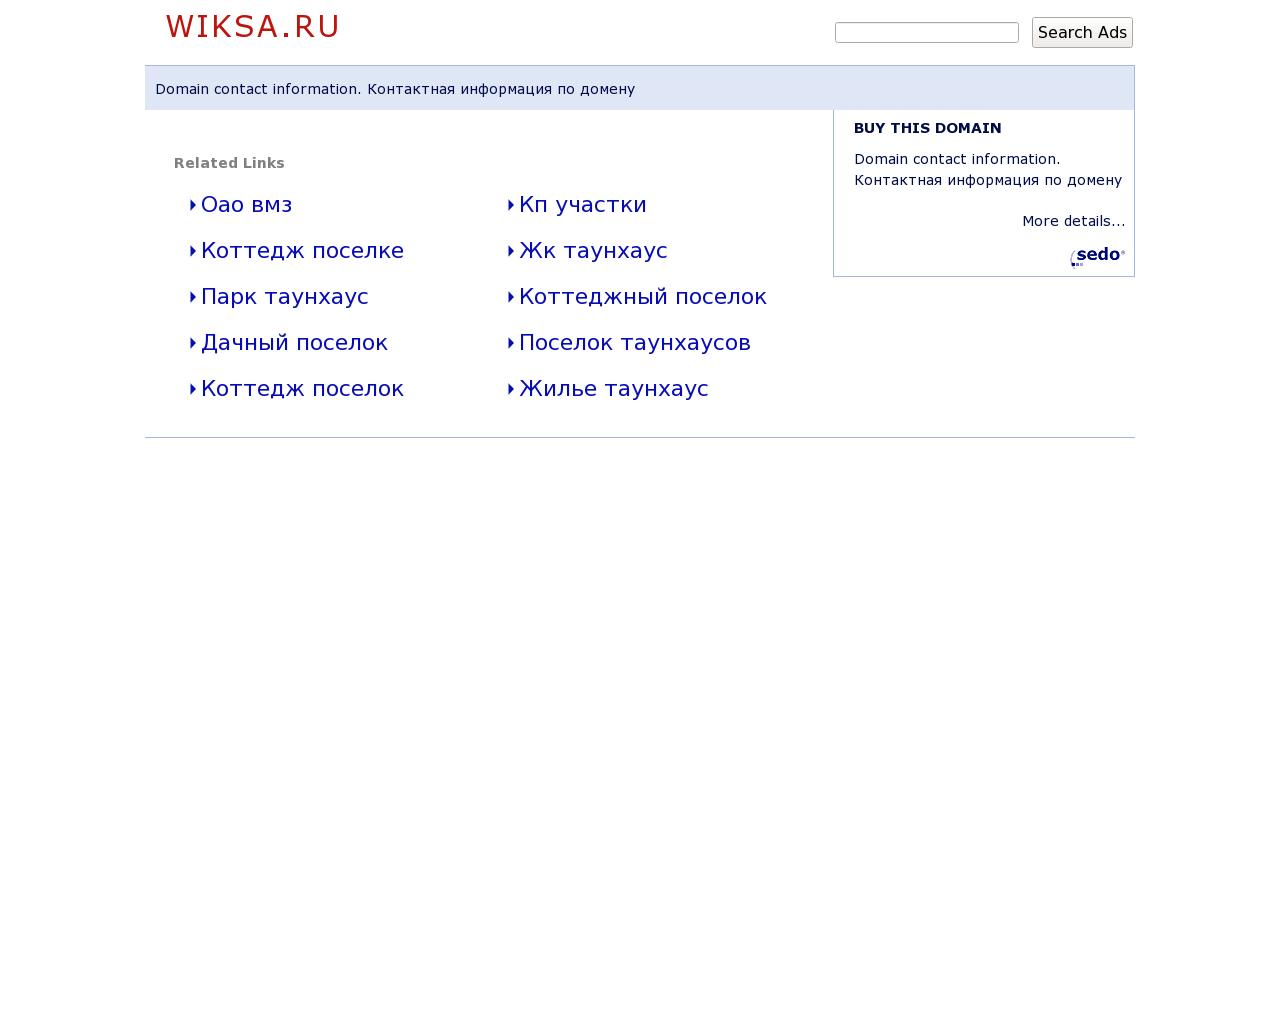 Изображение сайта wiksa.ru в разрешении 1280x1024